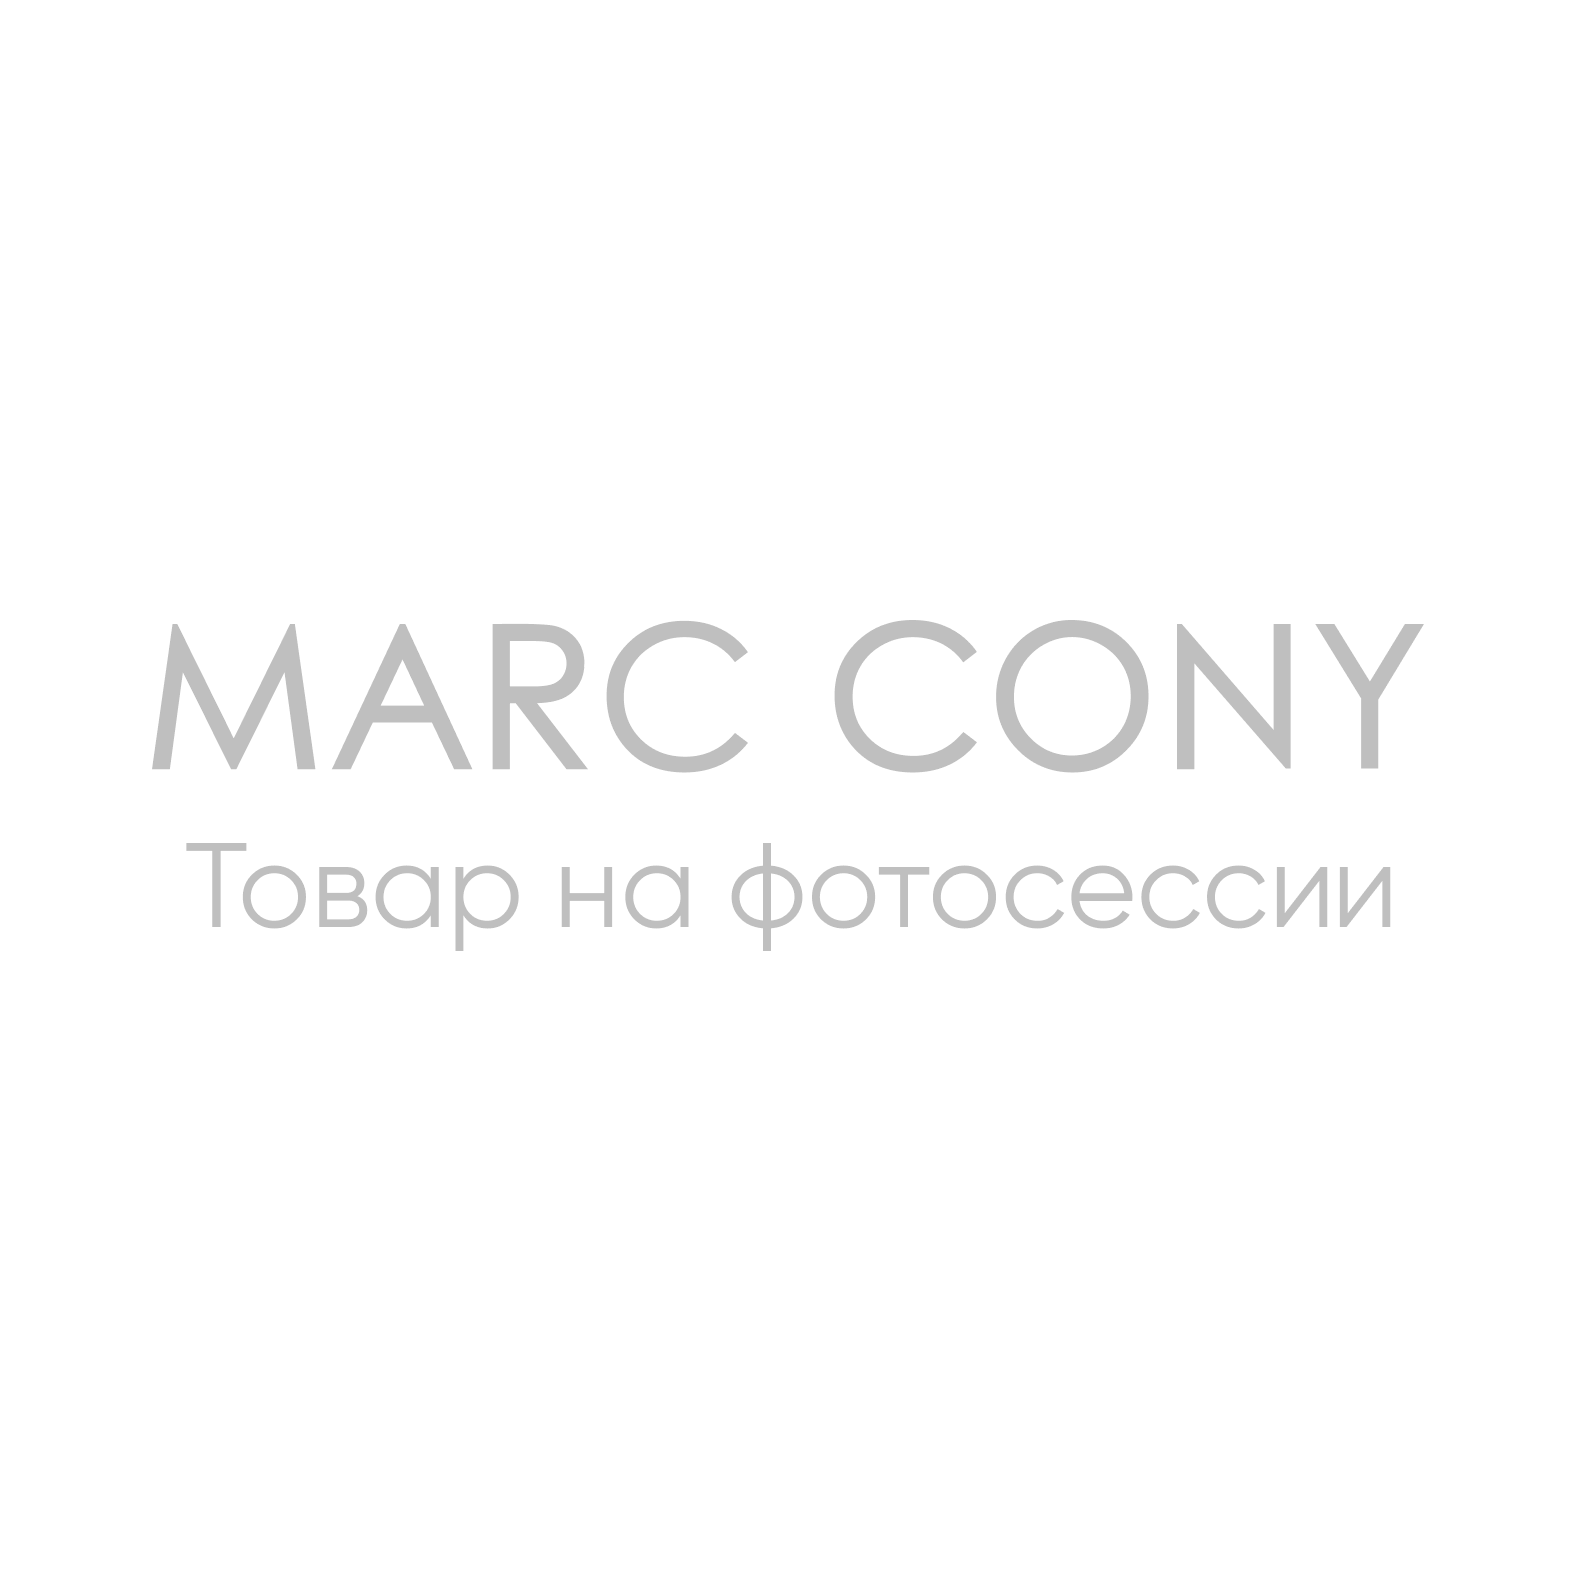 Ремень Marc Cony